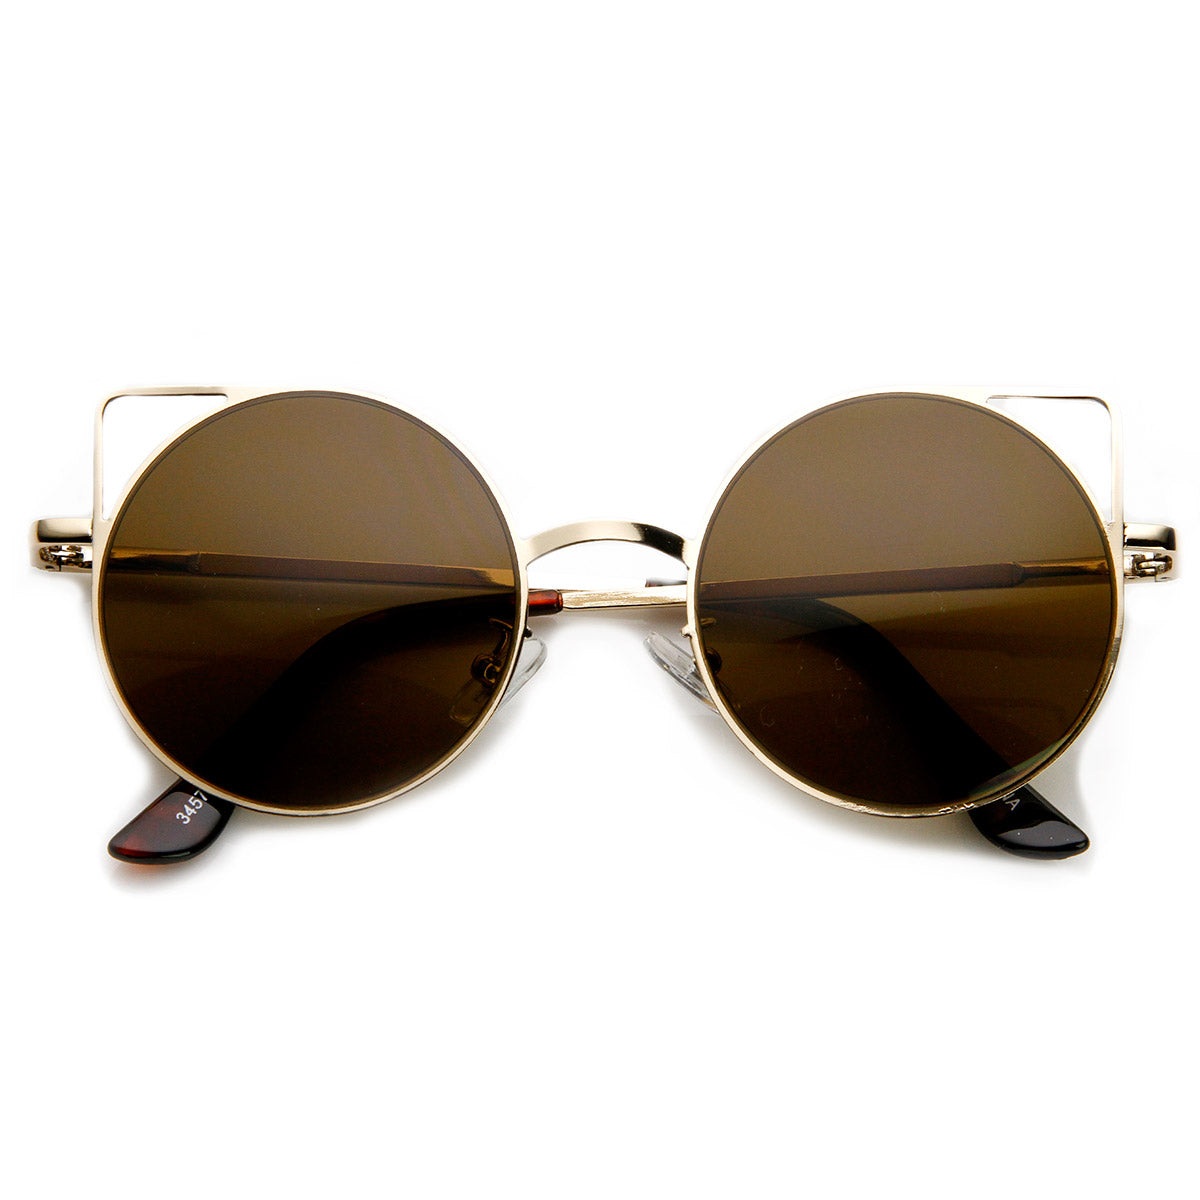 Clayton - Women Round Petite Cat Eye Sunglasses Circle Matte Gold - Brown